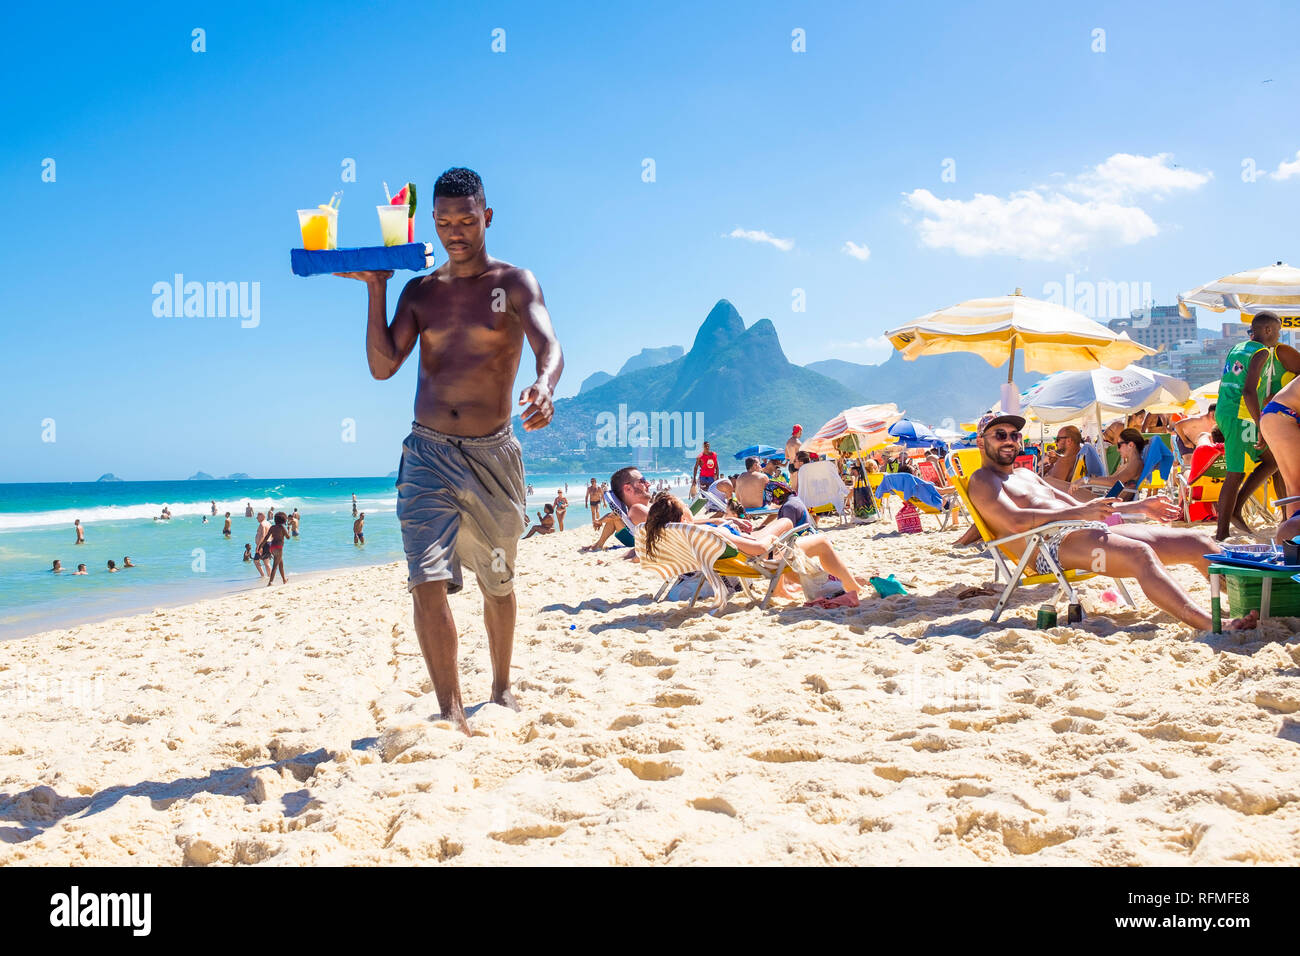 RIO DE JANEIRO - FEBRUARY, 2018: An unlicensed Brazilian beach vendor carries a tray of homemade caipirinha cocktails past beachgoers on Ipanema Beach Stock Photo